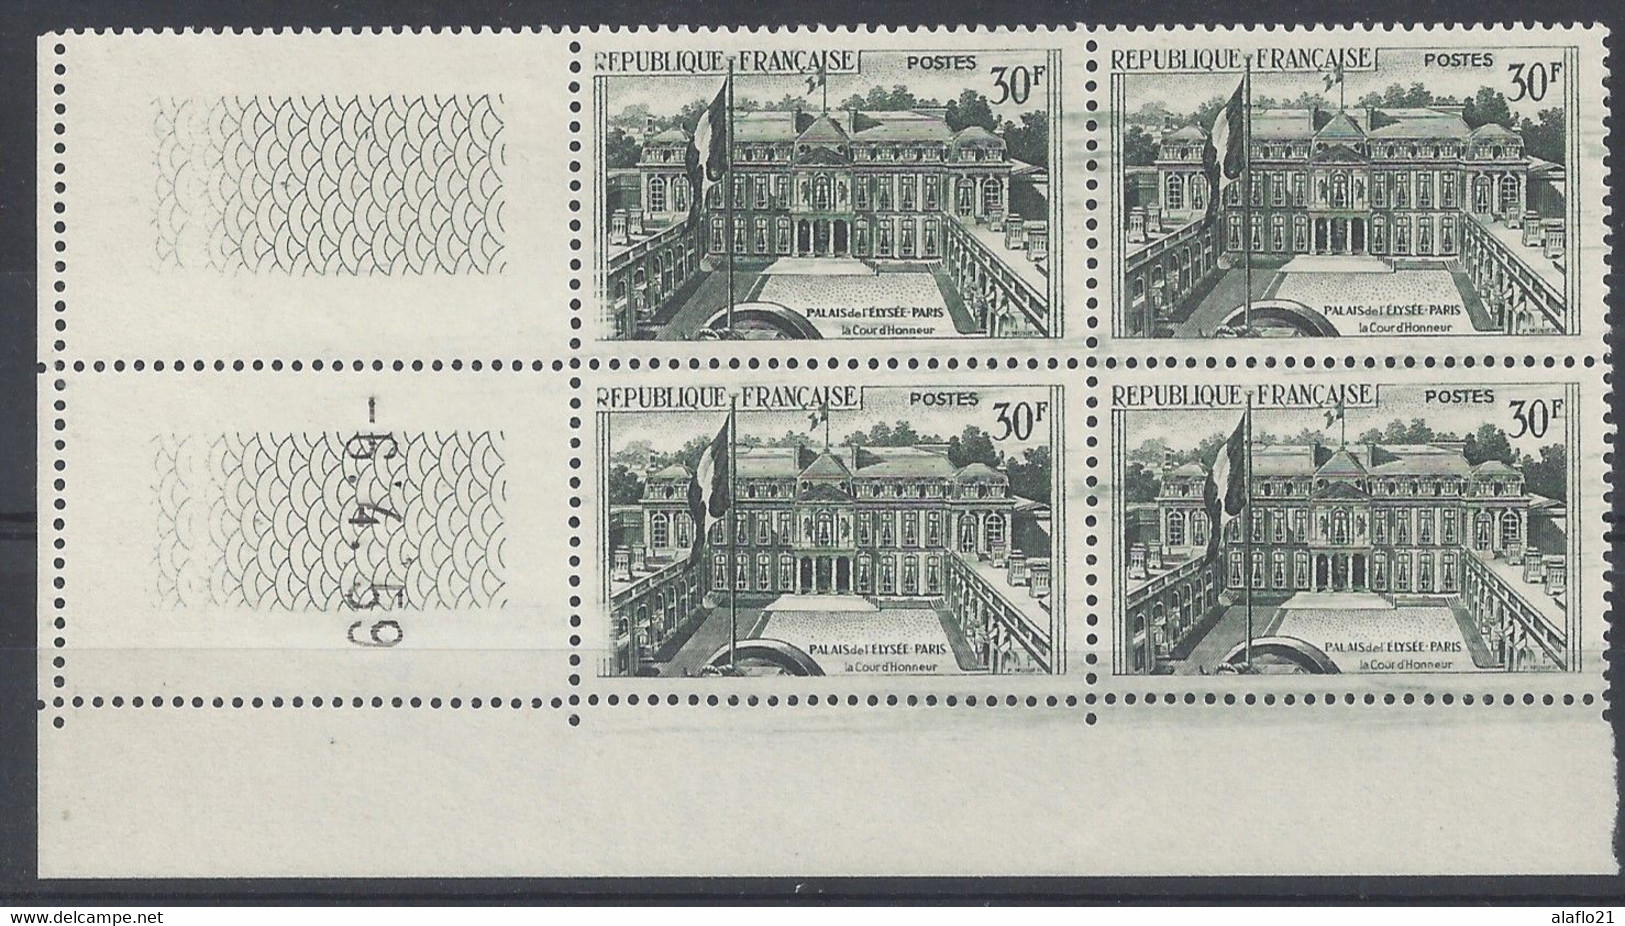 PALAIS ELYSEE N° 1192 - Bloc De 4 COIN DATE - NEUF SANS CHARNIERE - 6-4-59 - 1950-1959